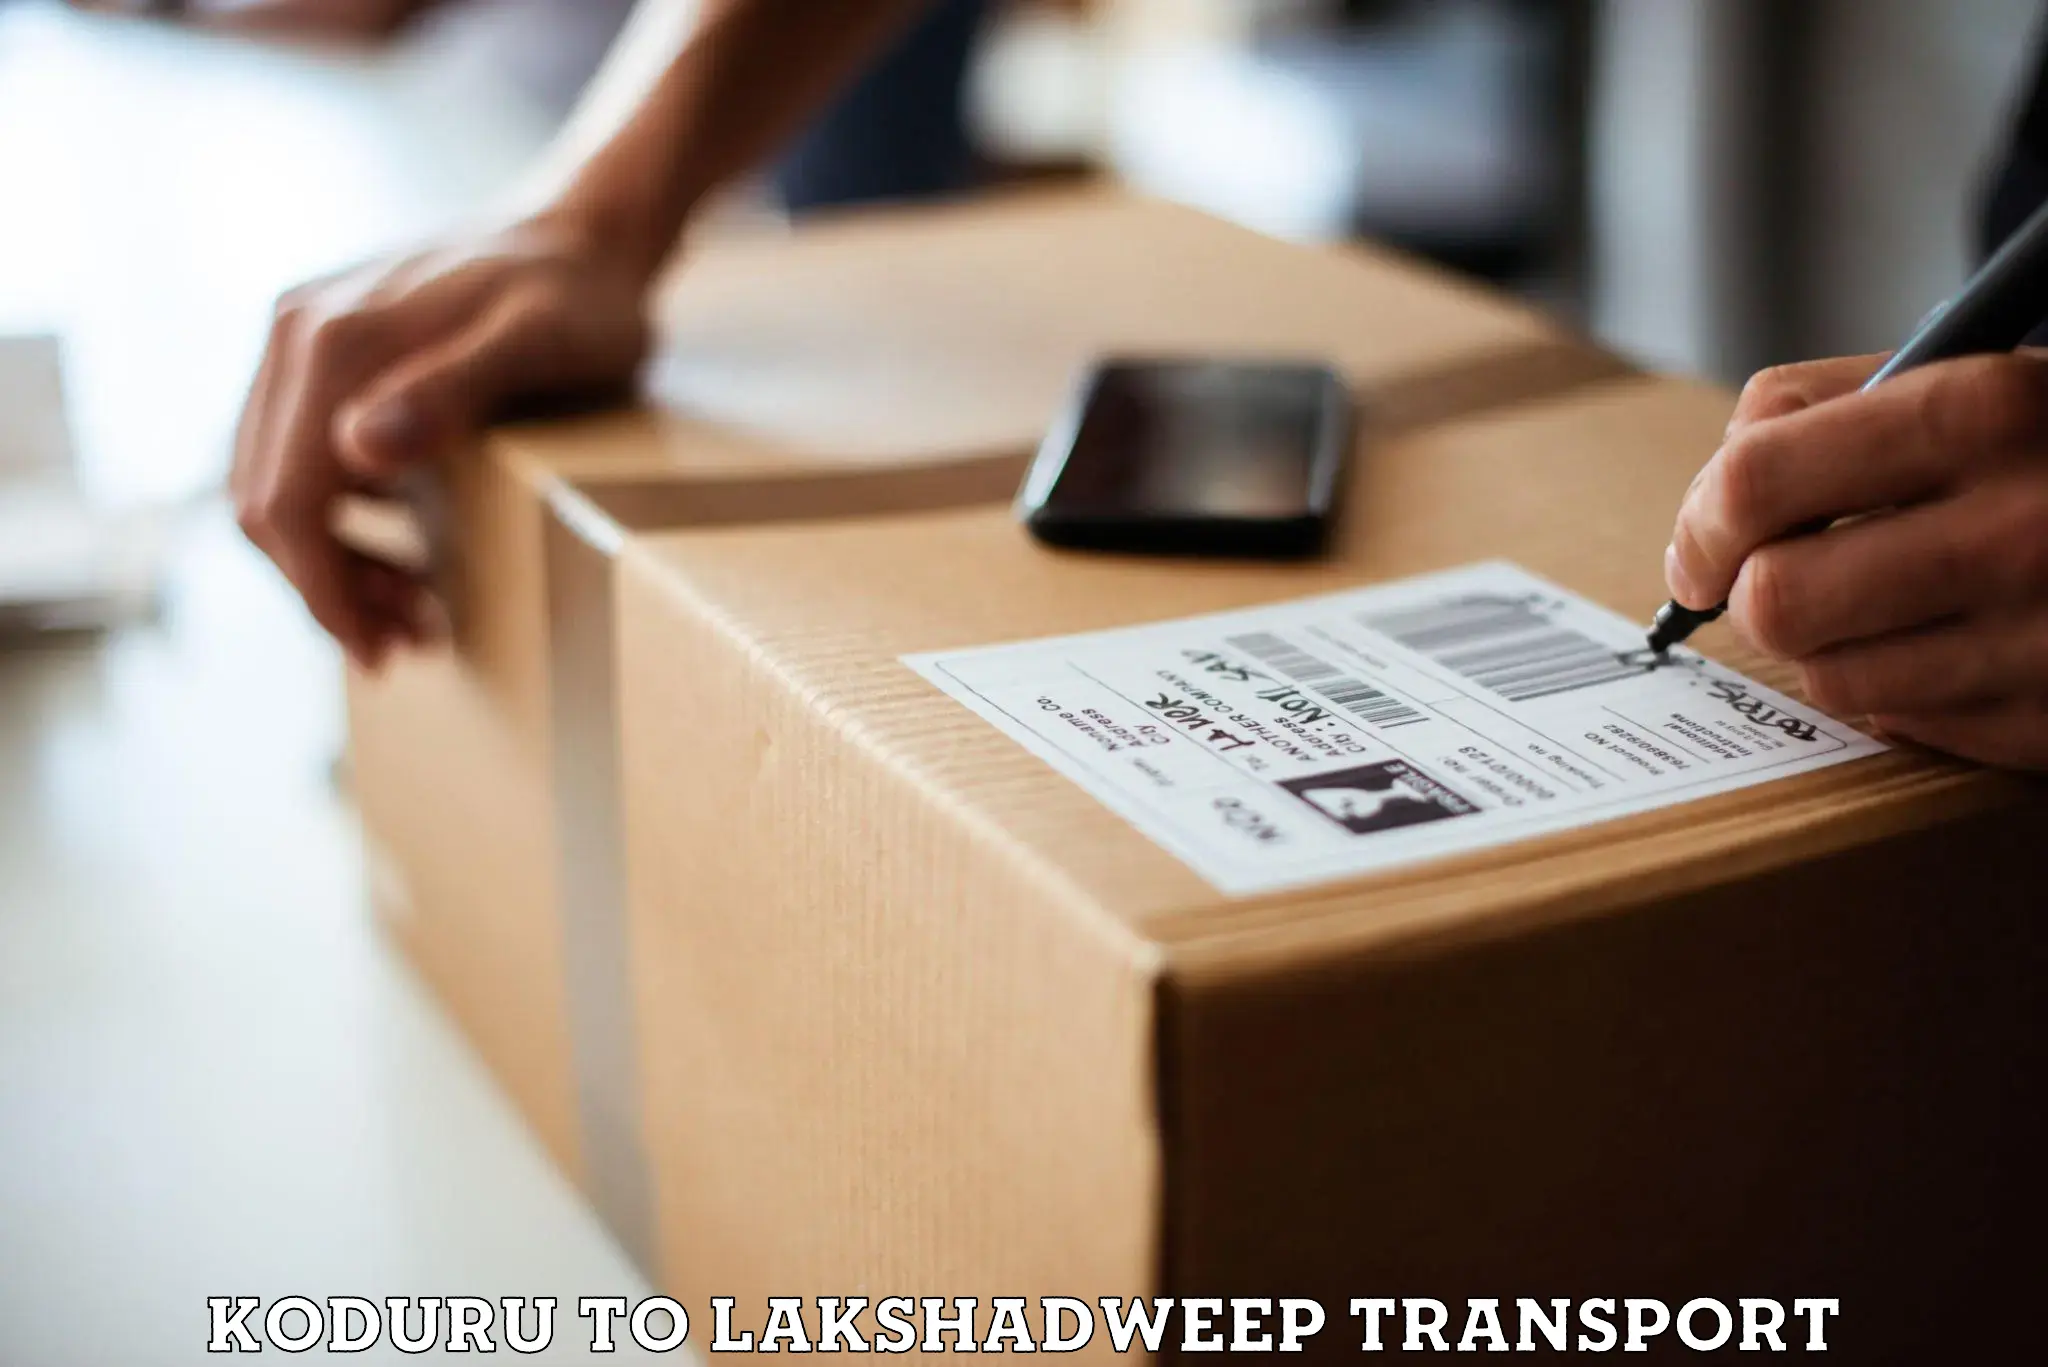 Daily parcel service transport Koduru to Lakshadweep